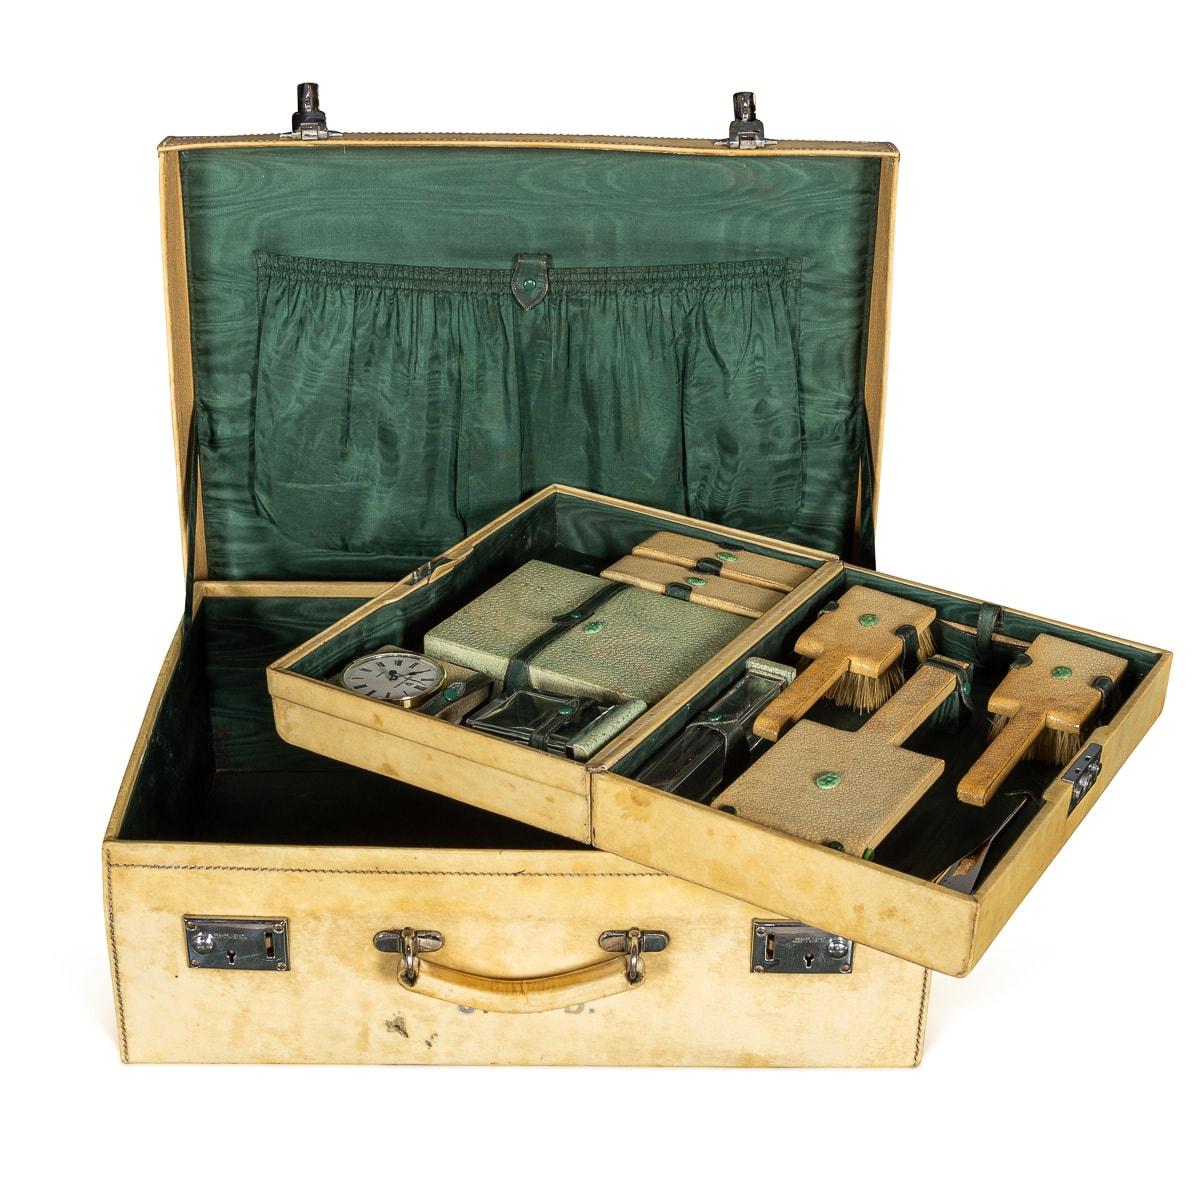 Ancienne valise anglaise du XXe siècle fabriquée en luxueux Vellum, accompagnée d'un vanity case intérieur compact, offre une polyvalence pour une utilisation conjointe ou individuelle. Parés d'une touche décadente, les deux étuis sont élégamment